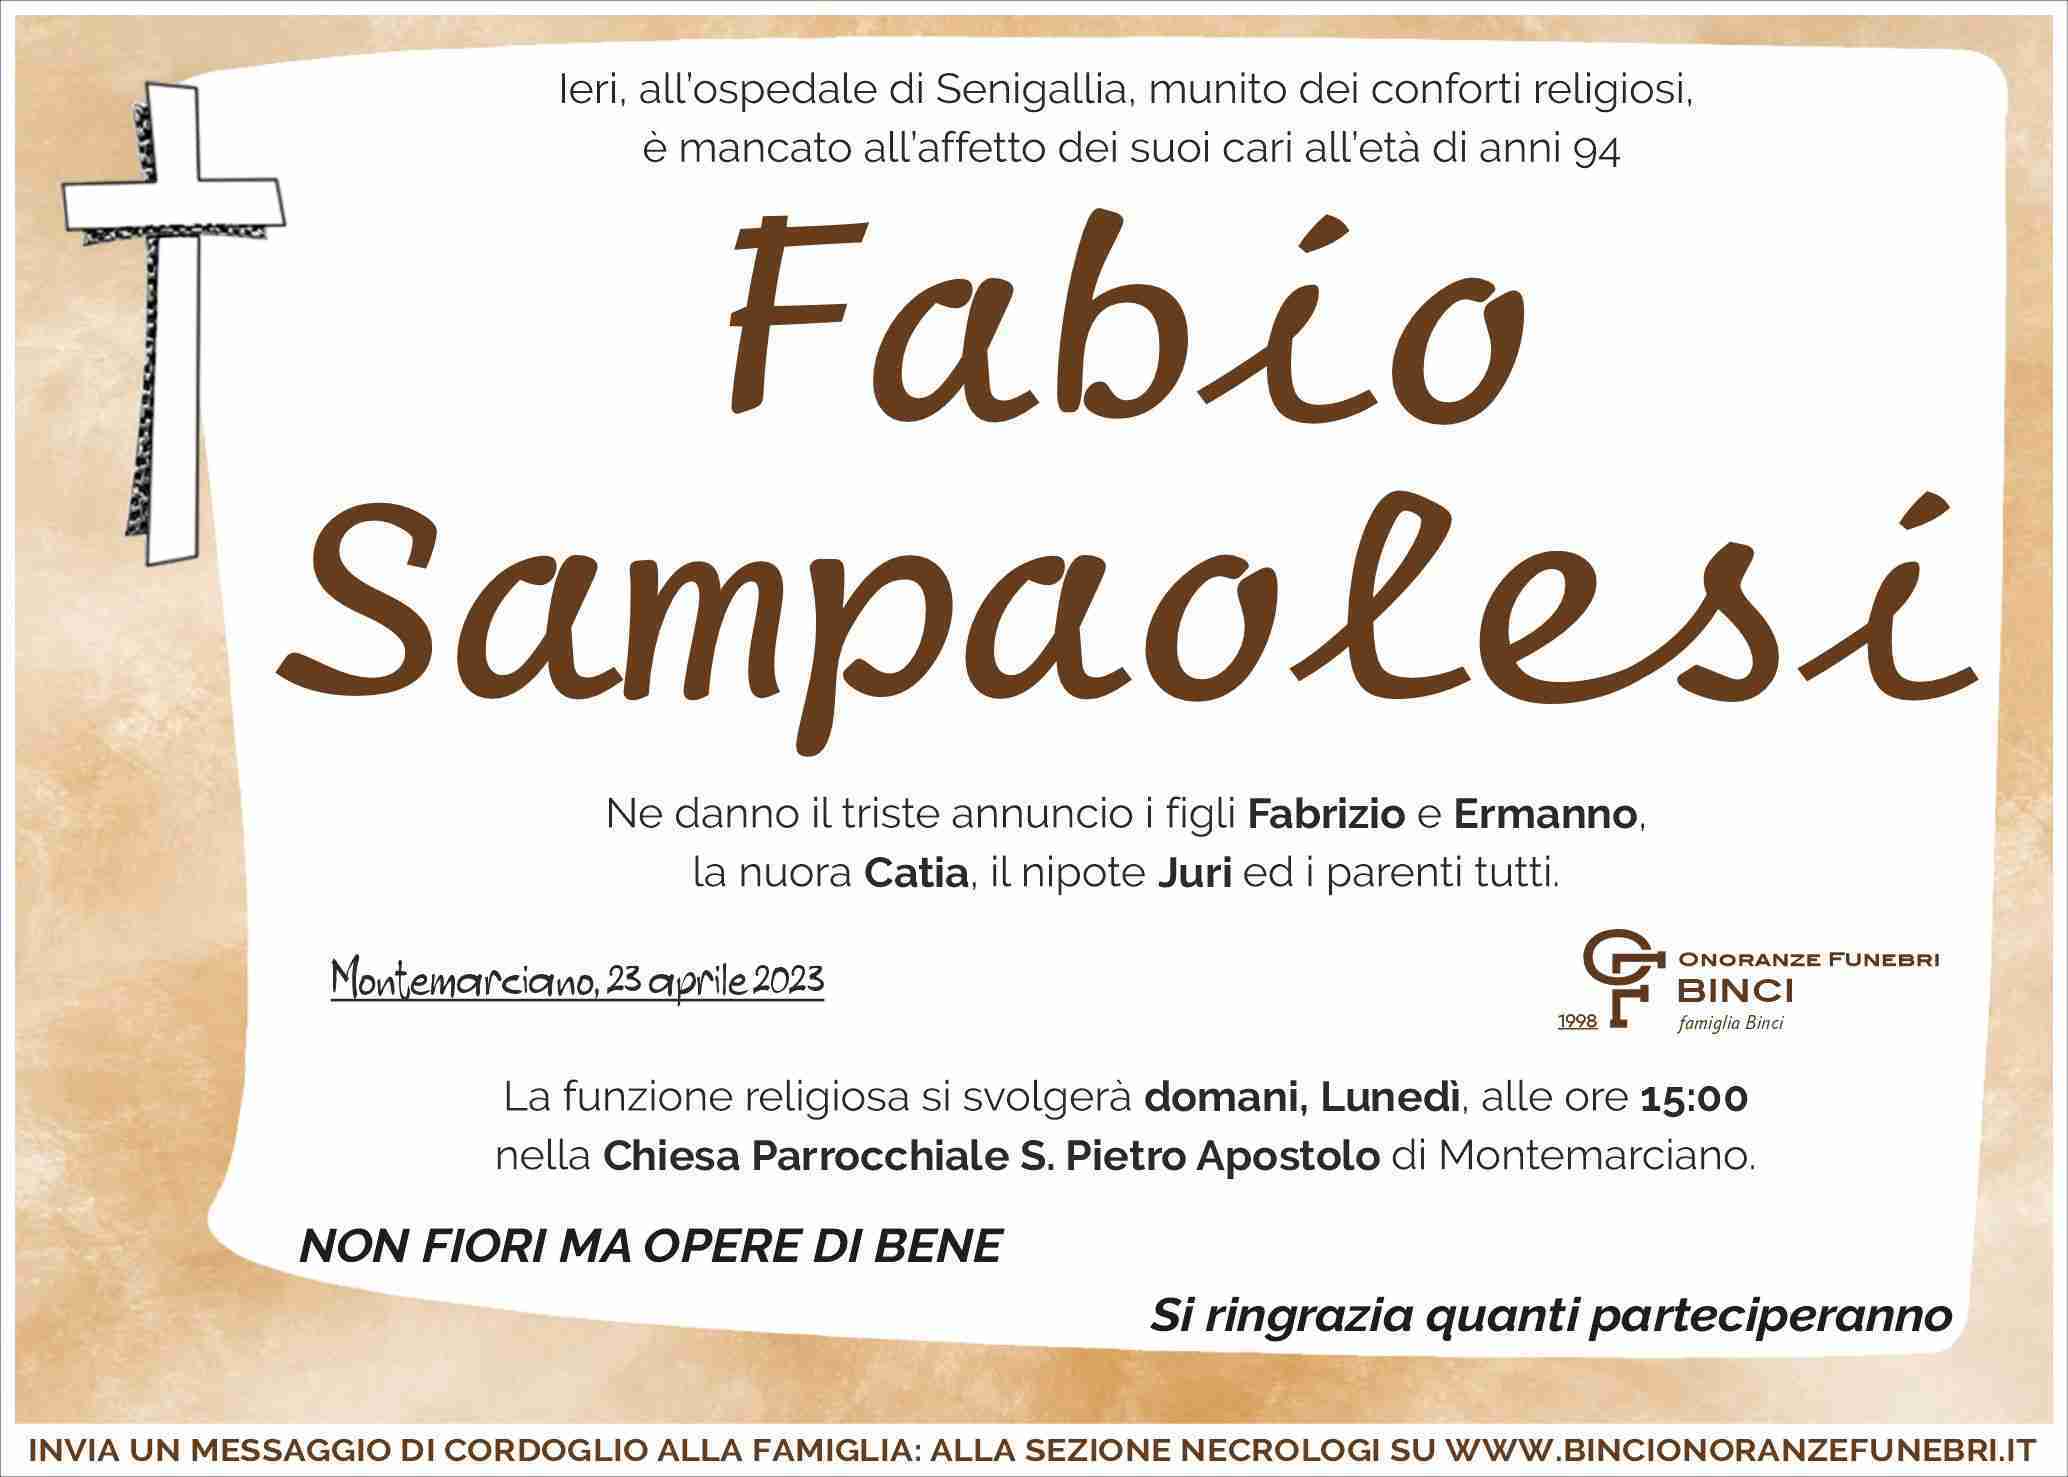 Fabio Sampaolesi